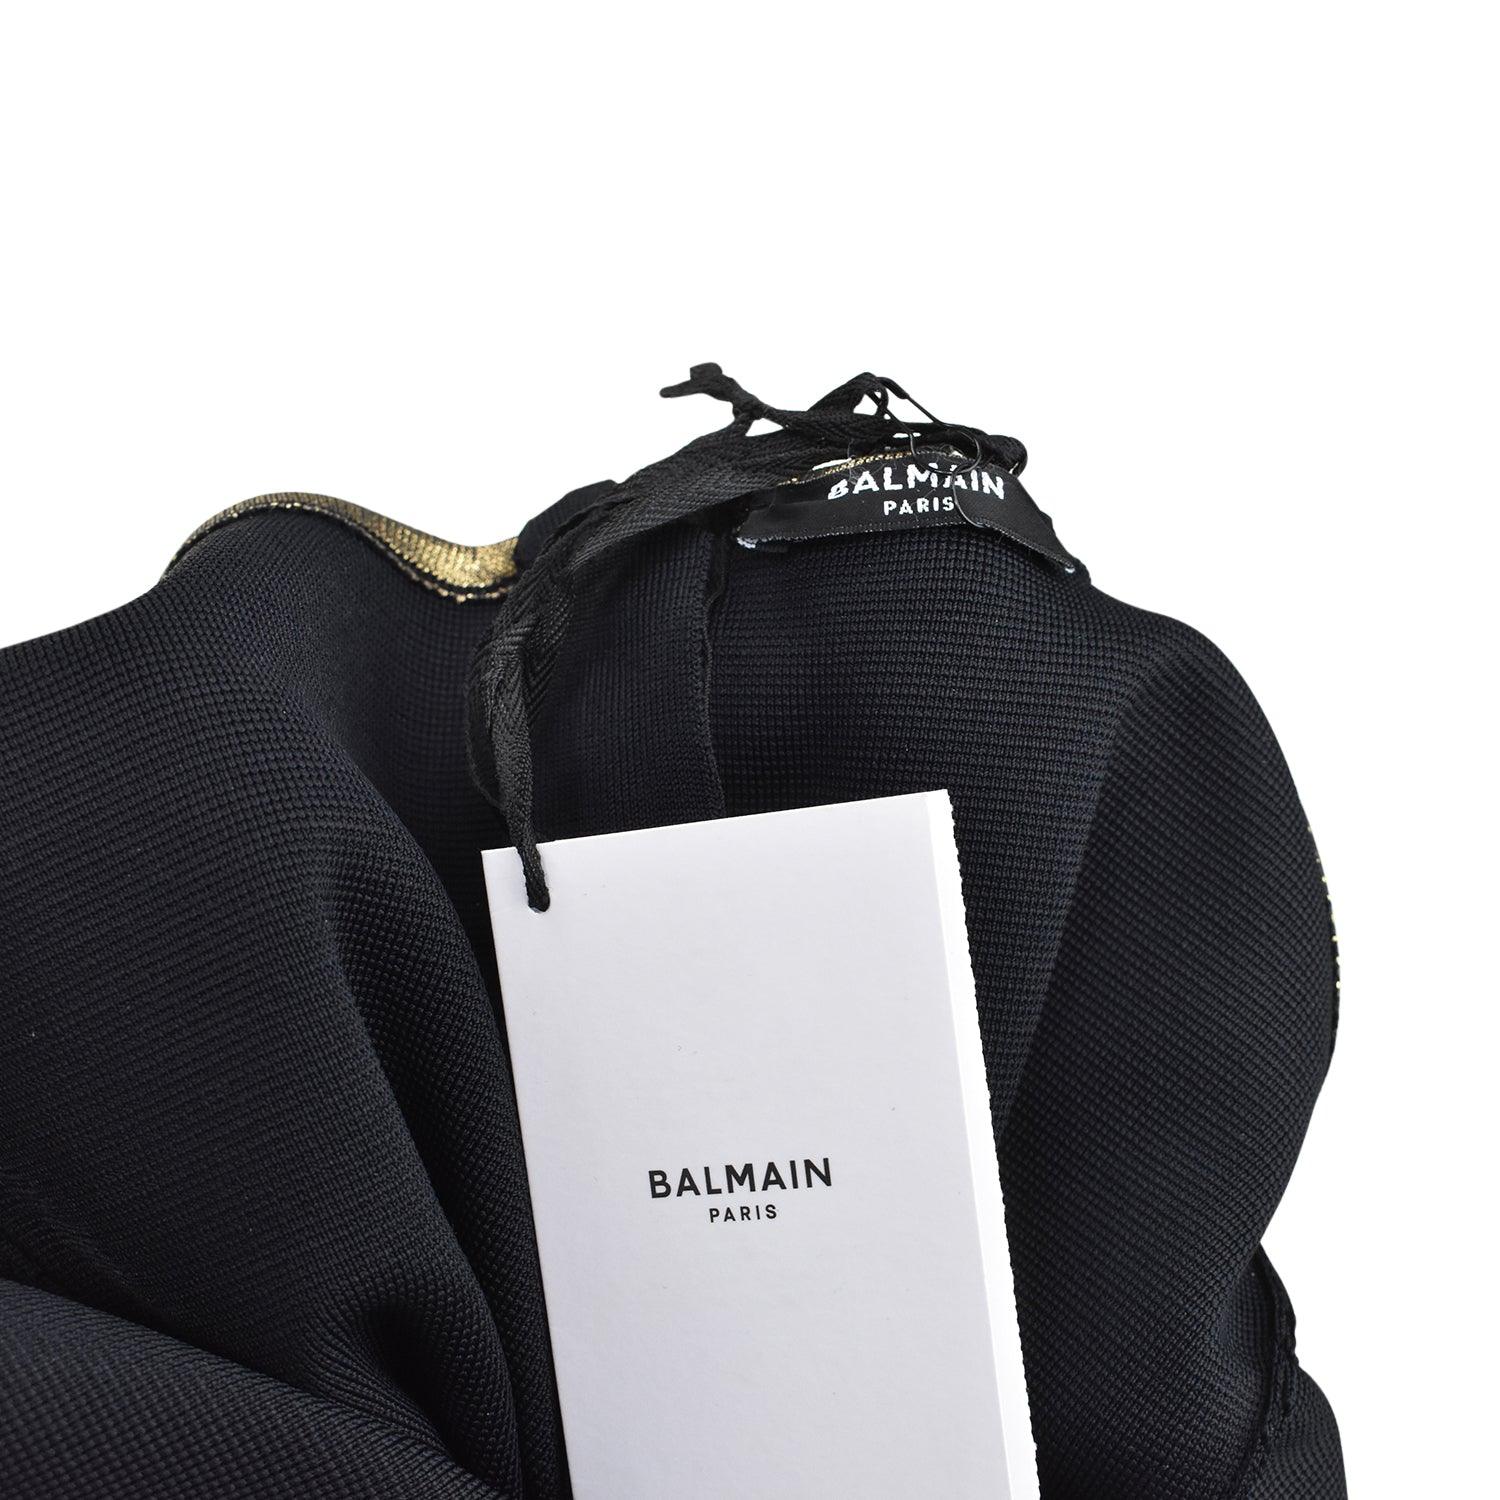 Balmain Dress - Women's 34 - Fashionably Yours